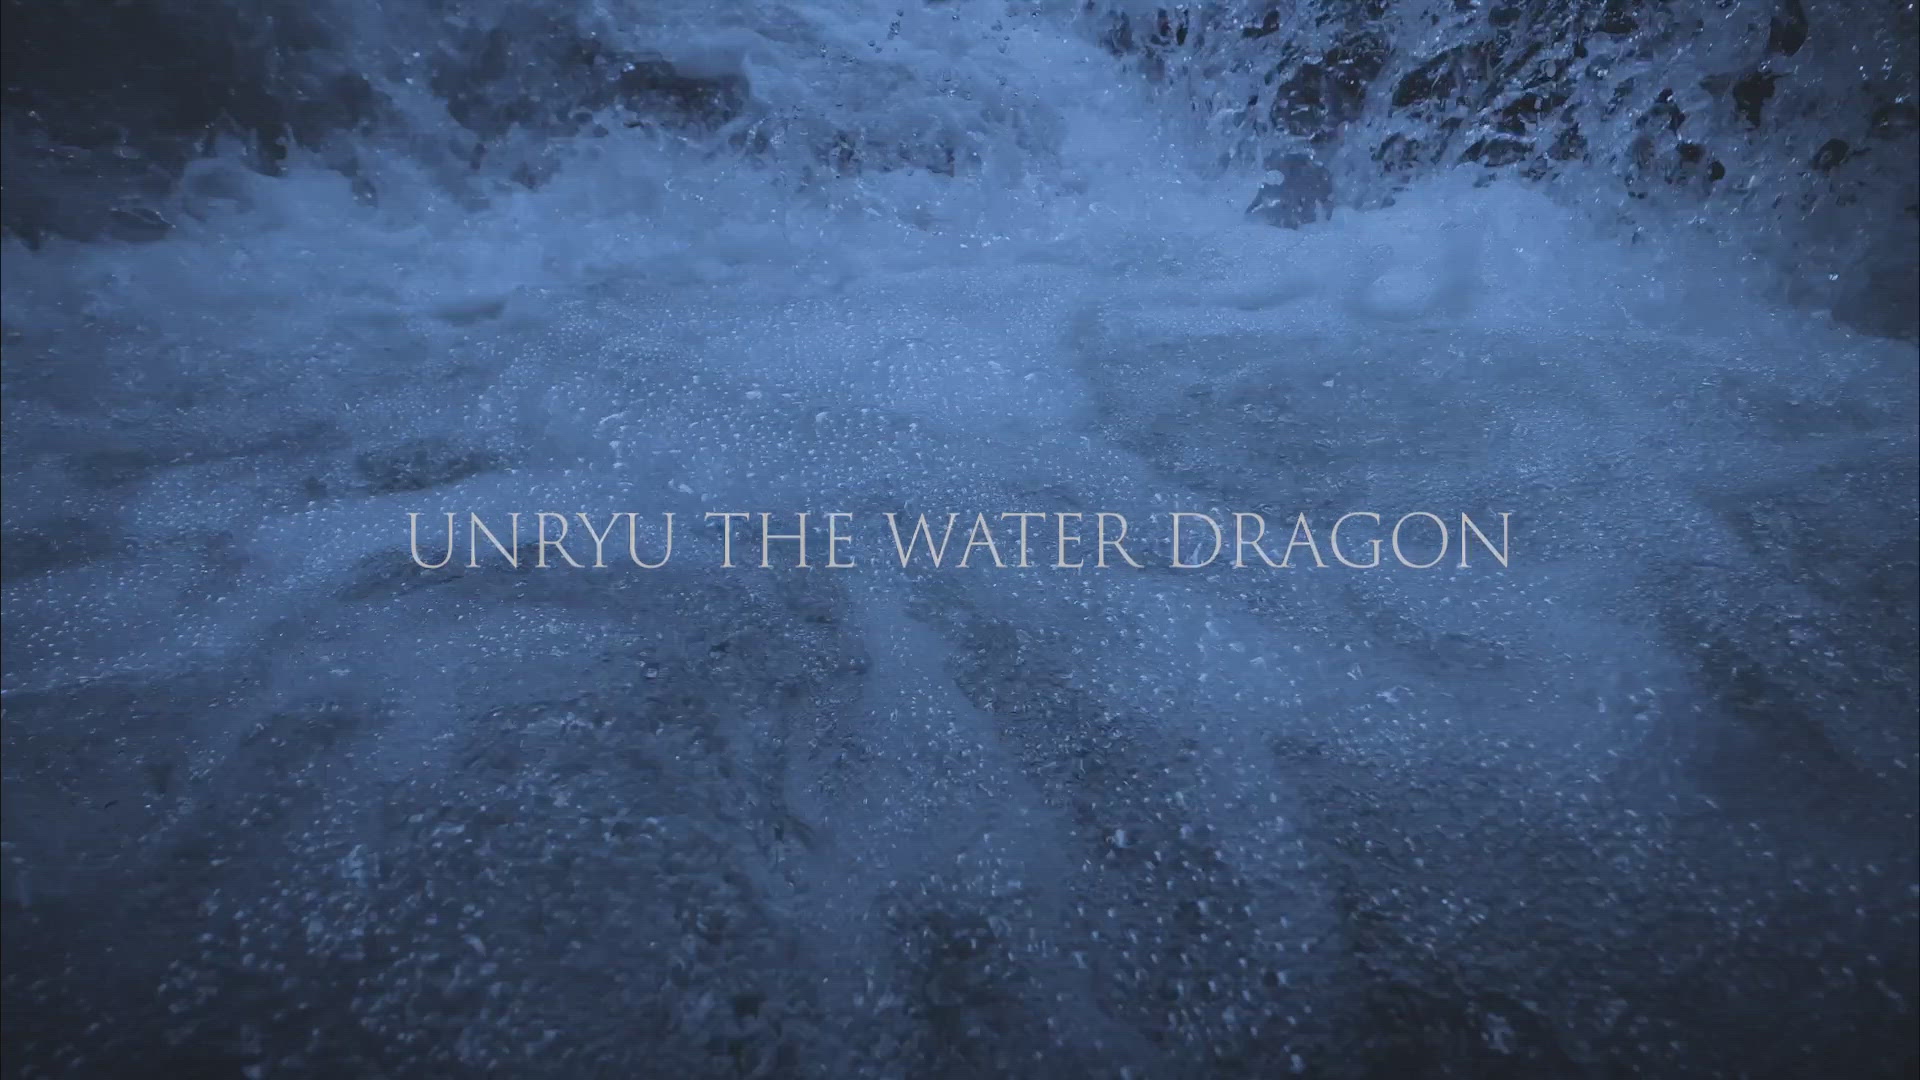 UNRYU THE WATER DRAGON